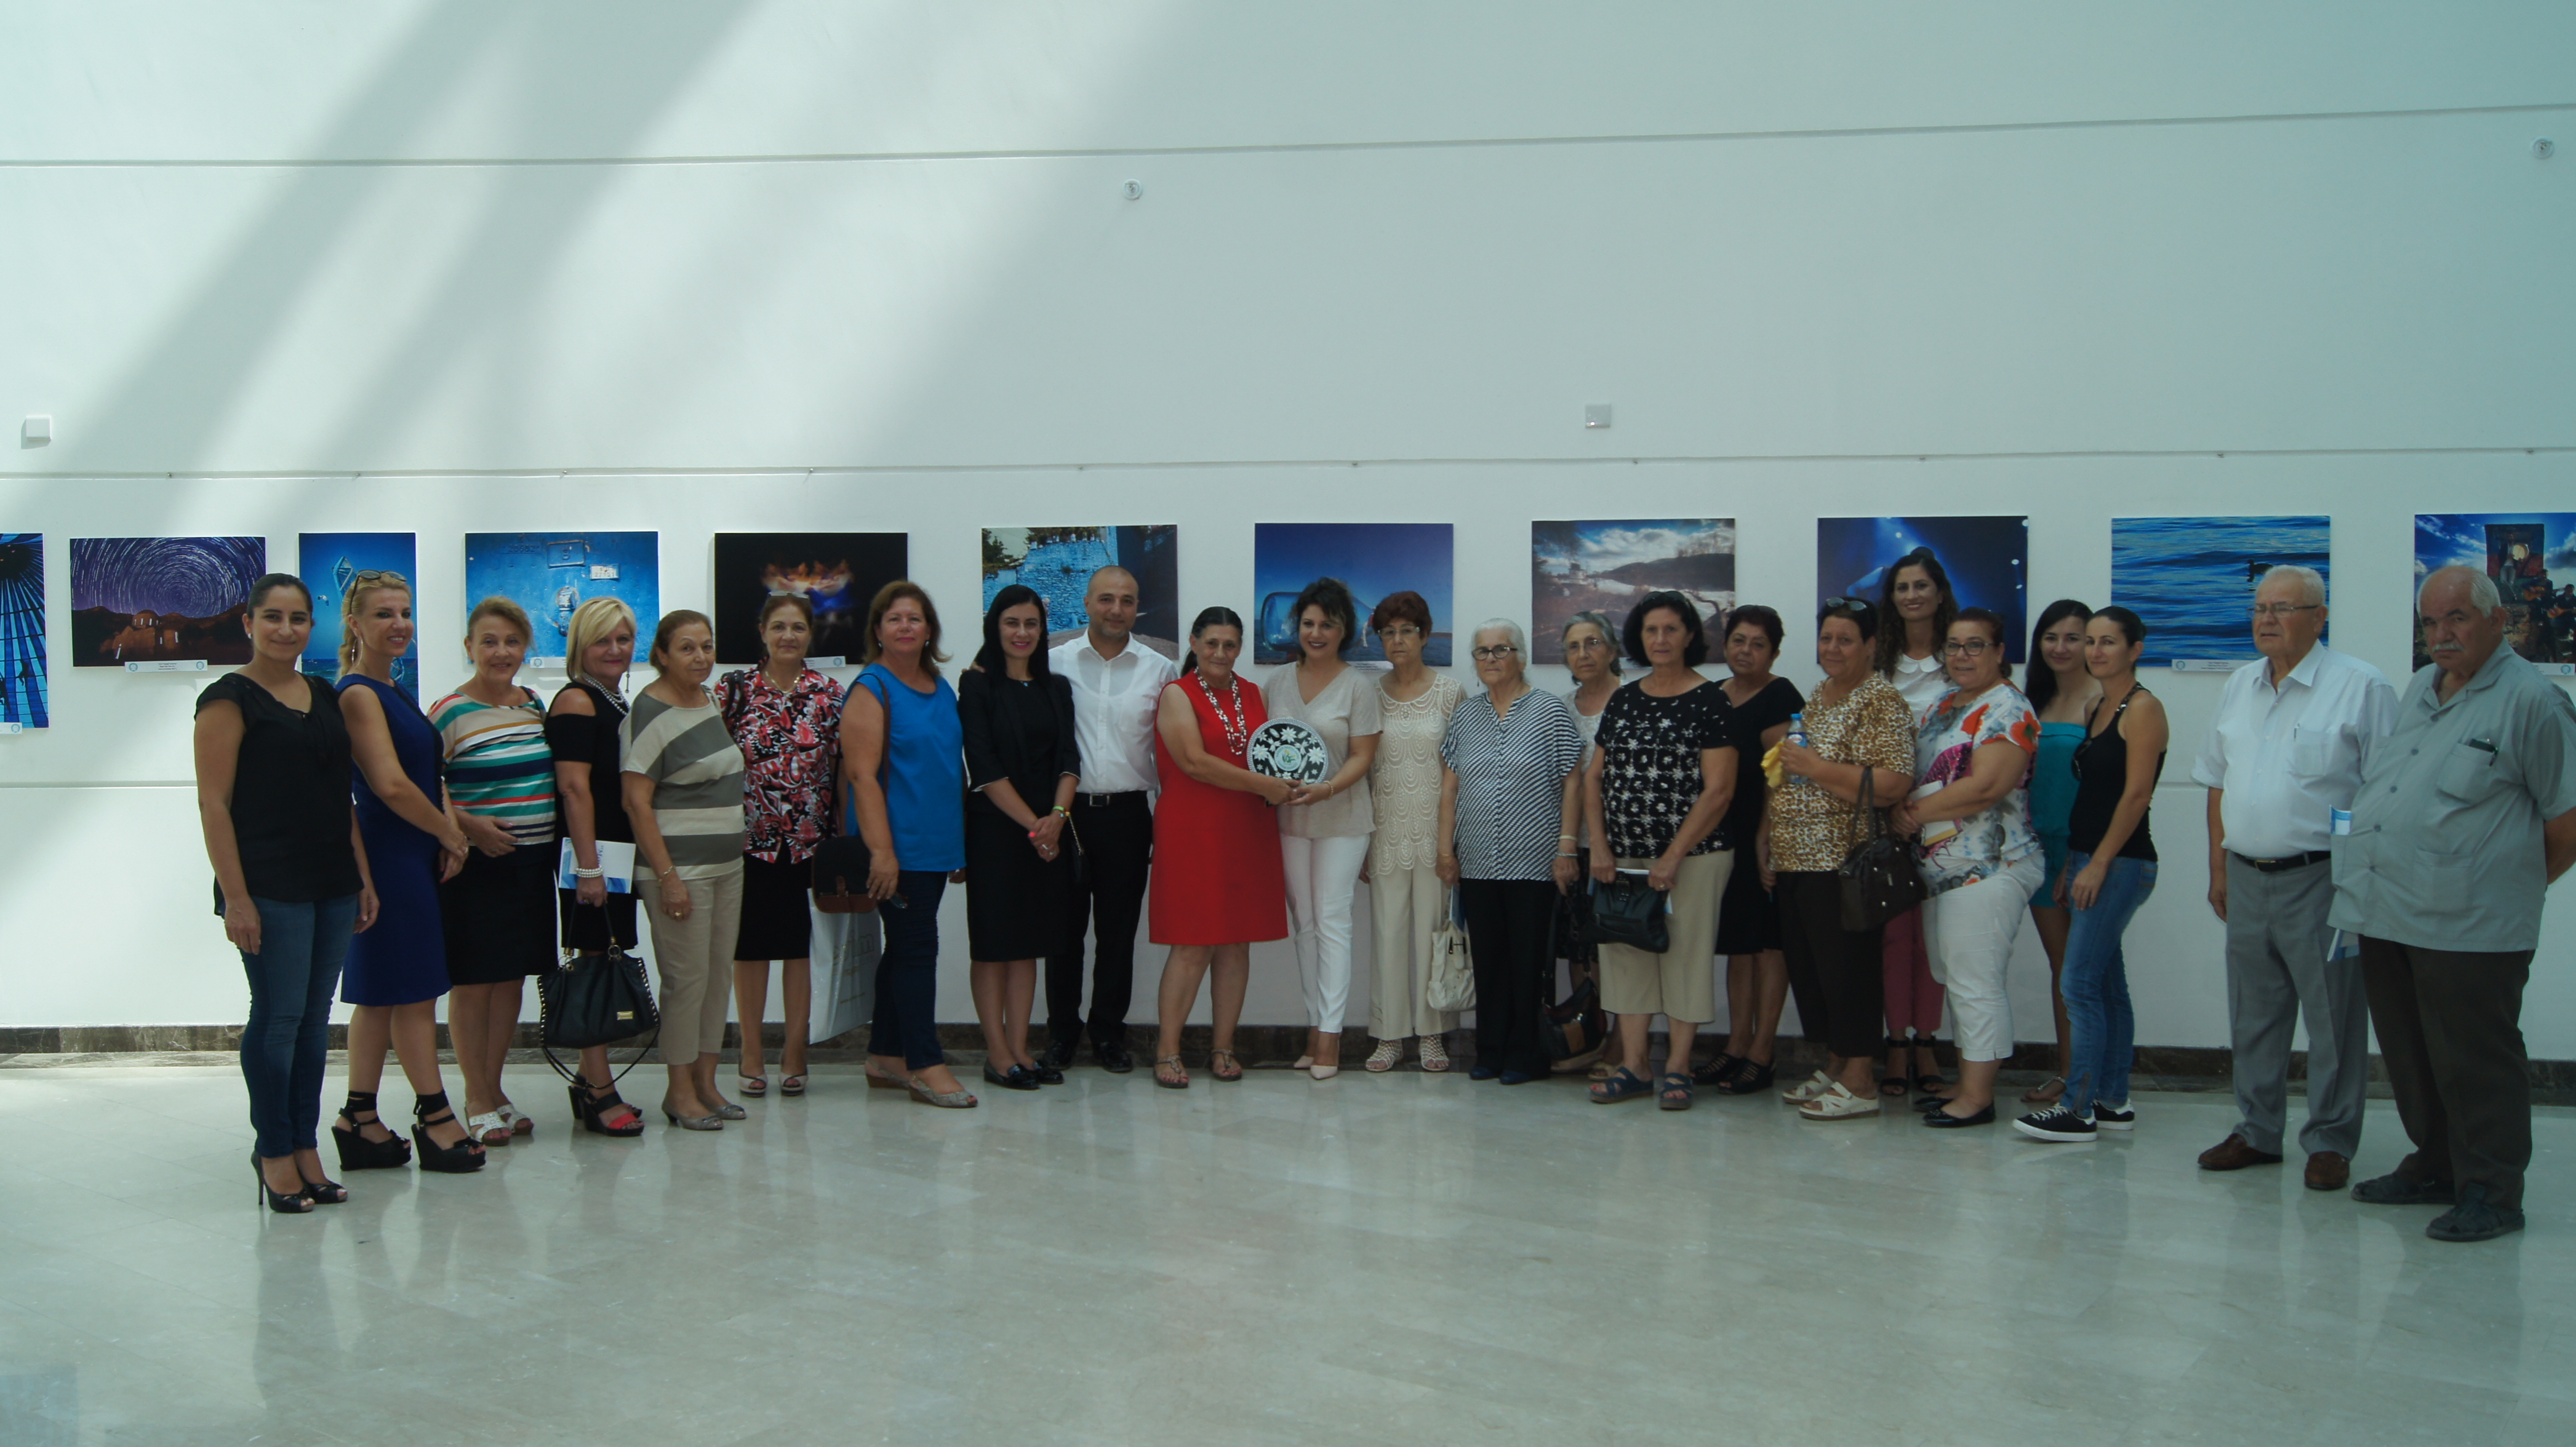 Kanser Hastalarına Yardım Derneği Başkanı ve 25 Kişilik Yönetim Kurulu Girne Üniversitesi Vakfı’nın Düzenlediği Mavi Temalı Fotoğraf Sergisi’ni YDÜ Hastanesi’nde Gezdi